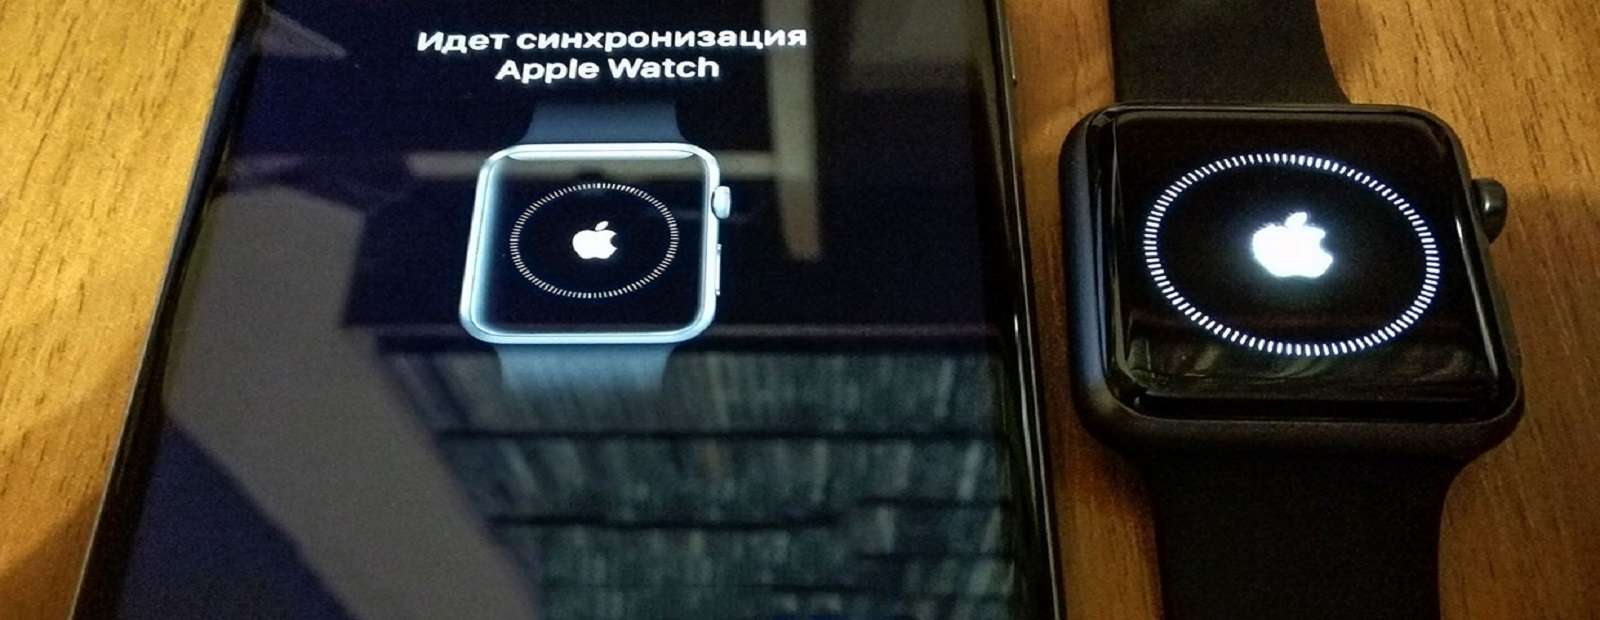 Безпечне перенесення даних з Apple Watch